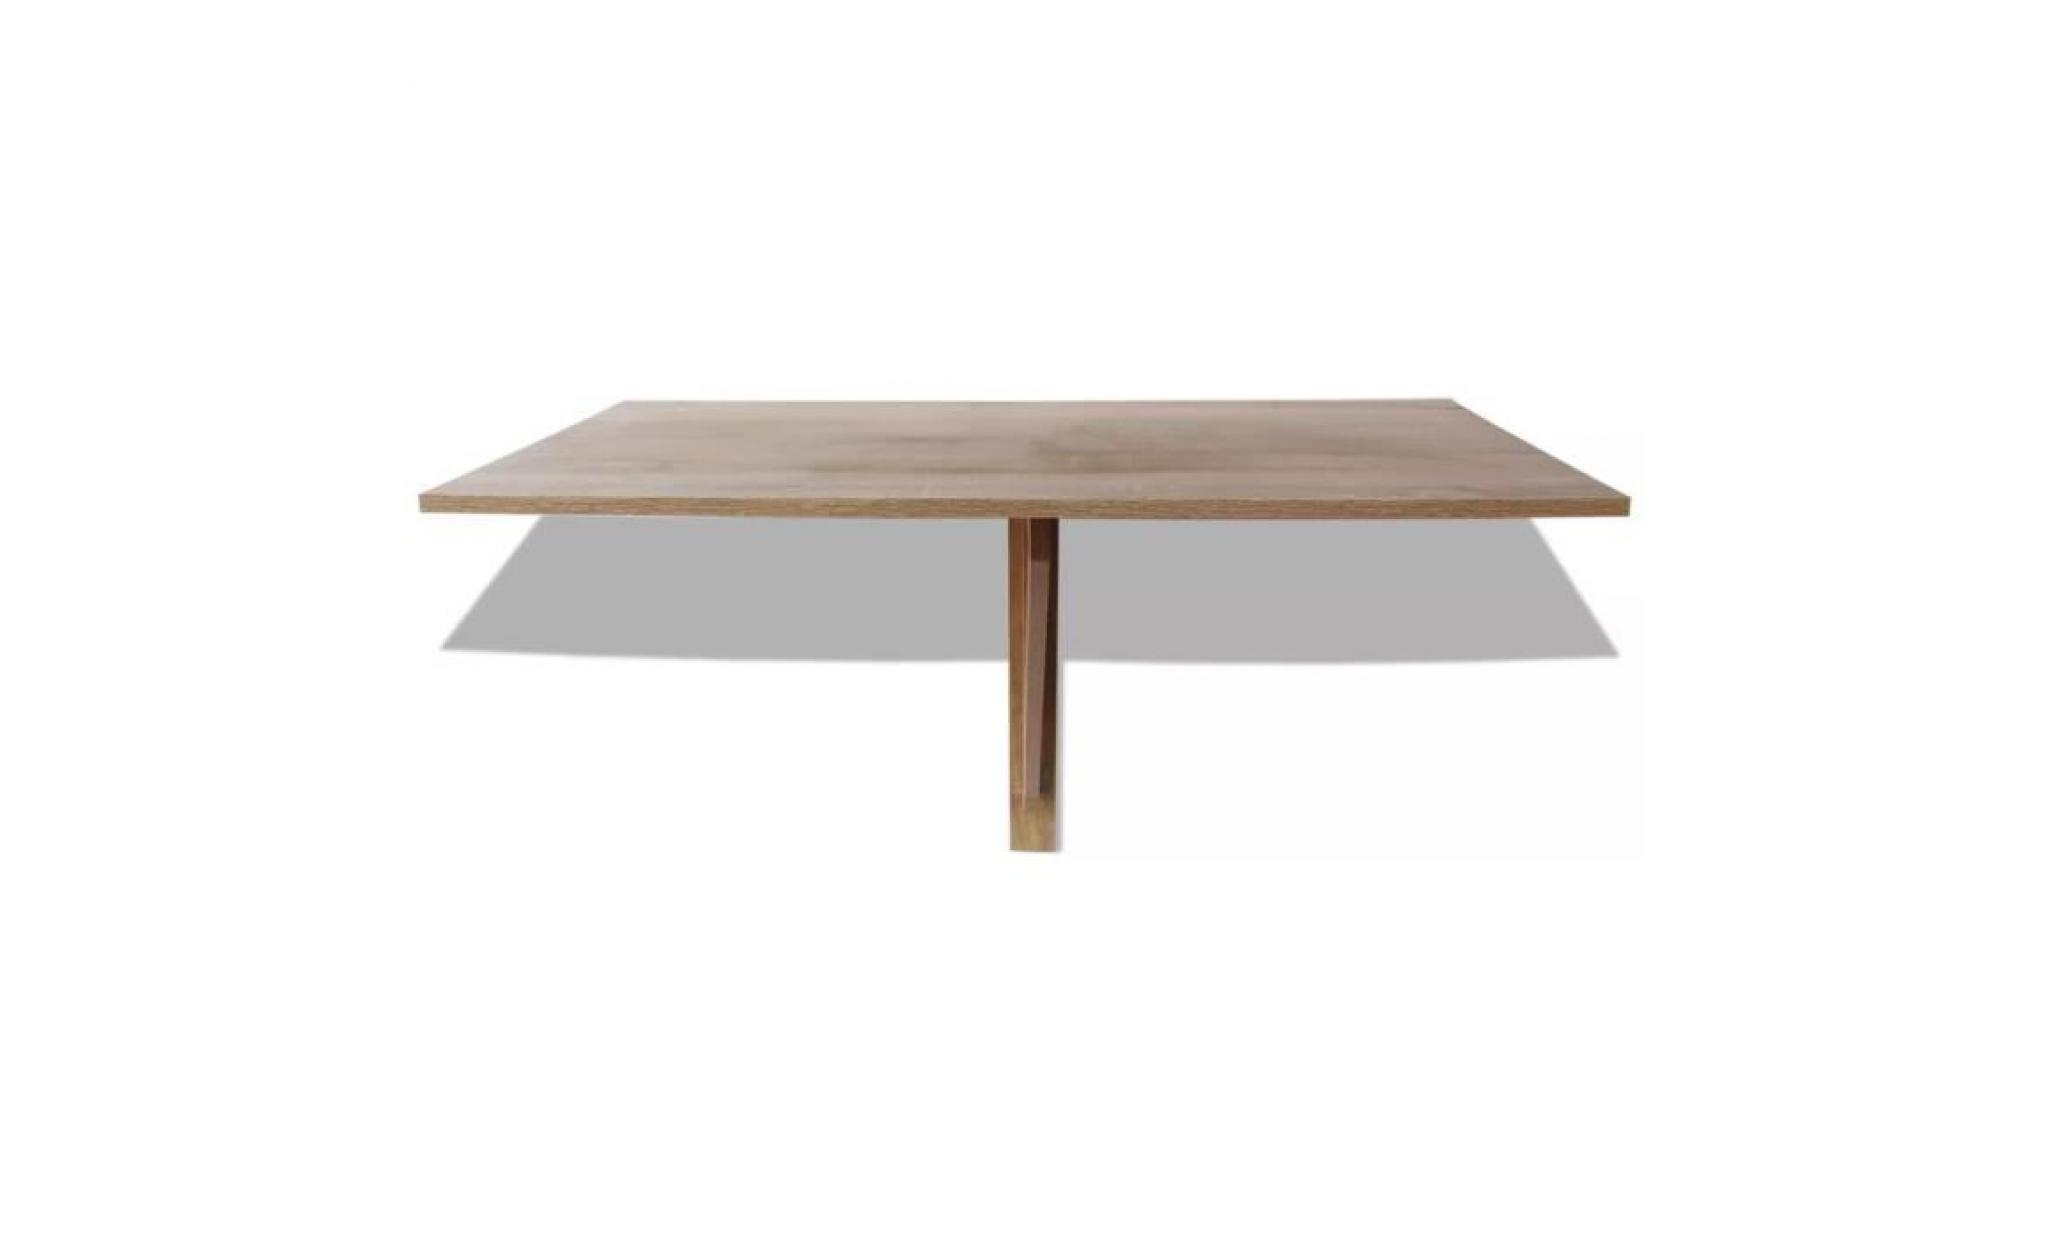 tables pliantes couleur : chene materiau : agglomere dimensions lorsqu'elle est deployee : 100